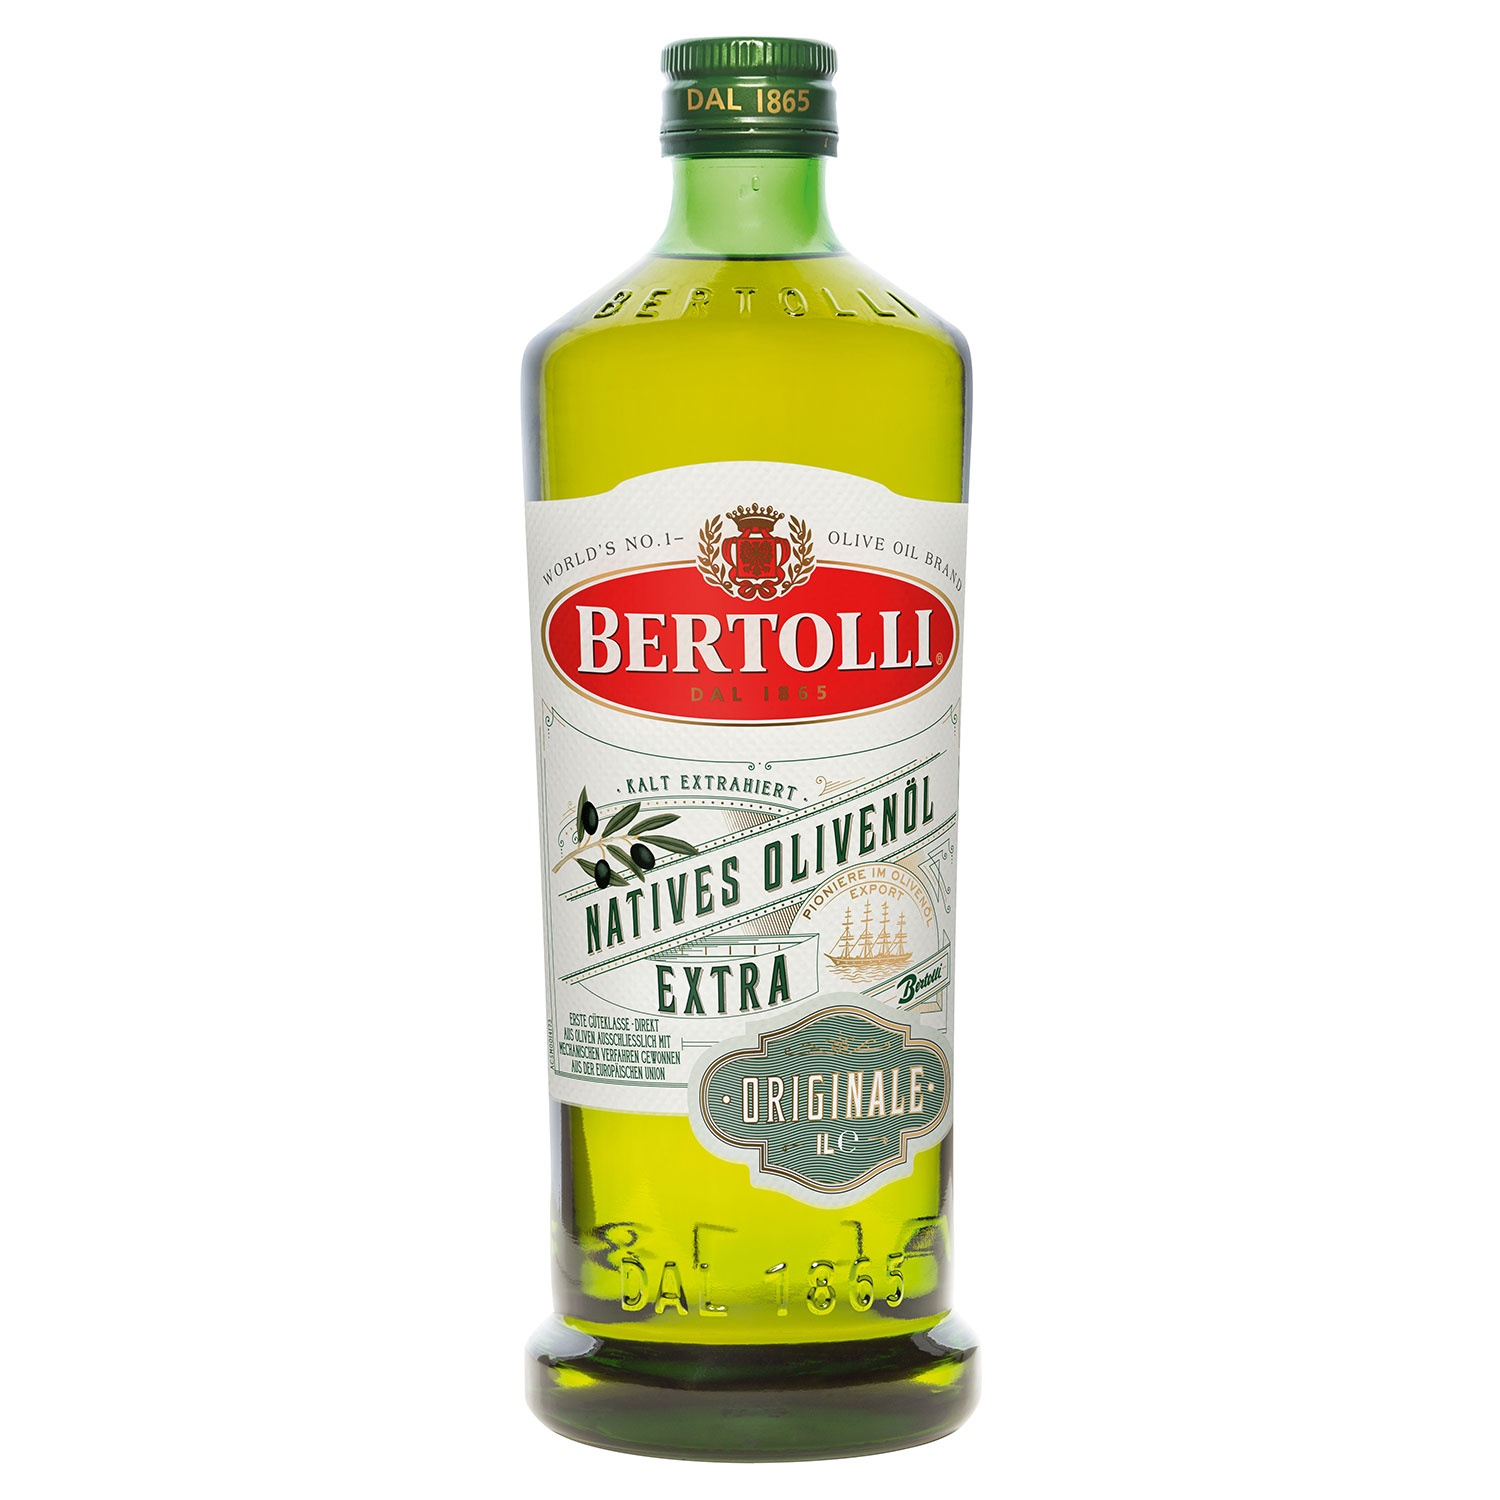 BERTOLLI Natives Olivenöl Extra 1 l 